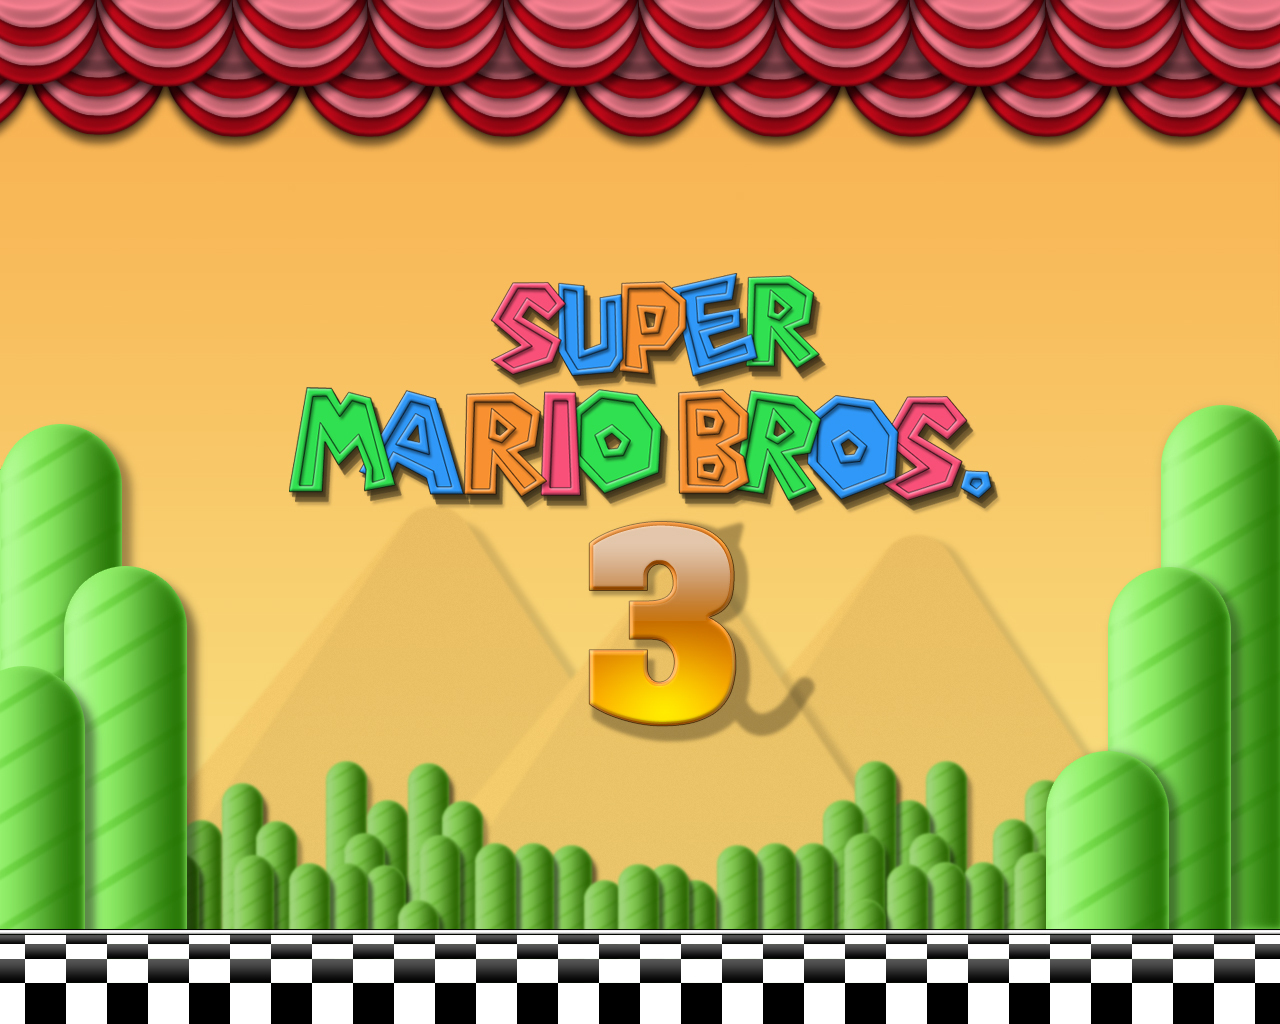 Super Mario Bros 3 - Super Mario Bros. Wallpaper (5430049) - Fanpop